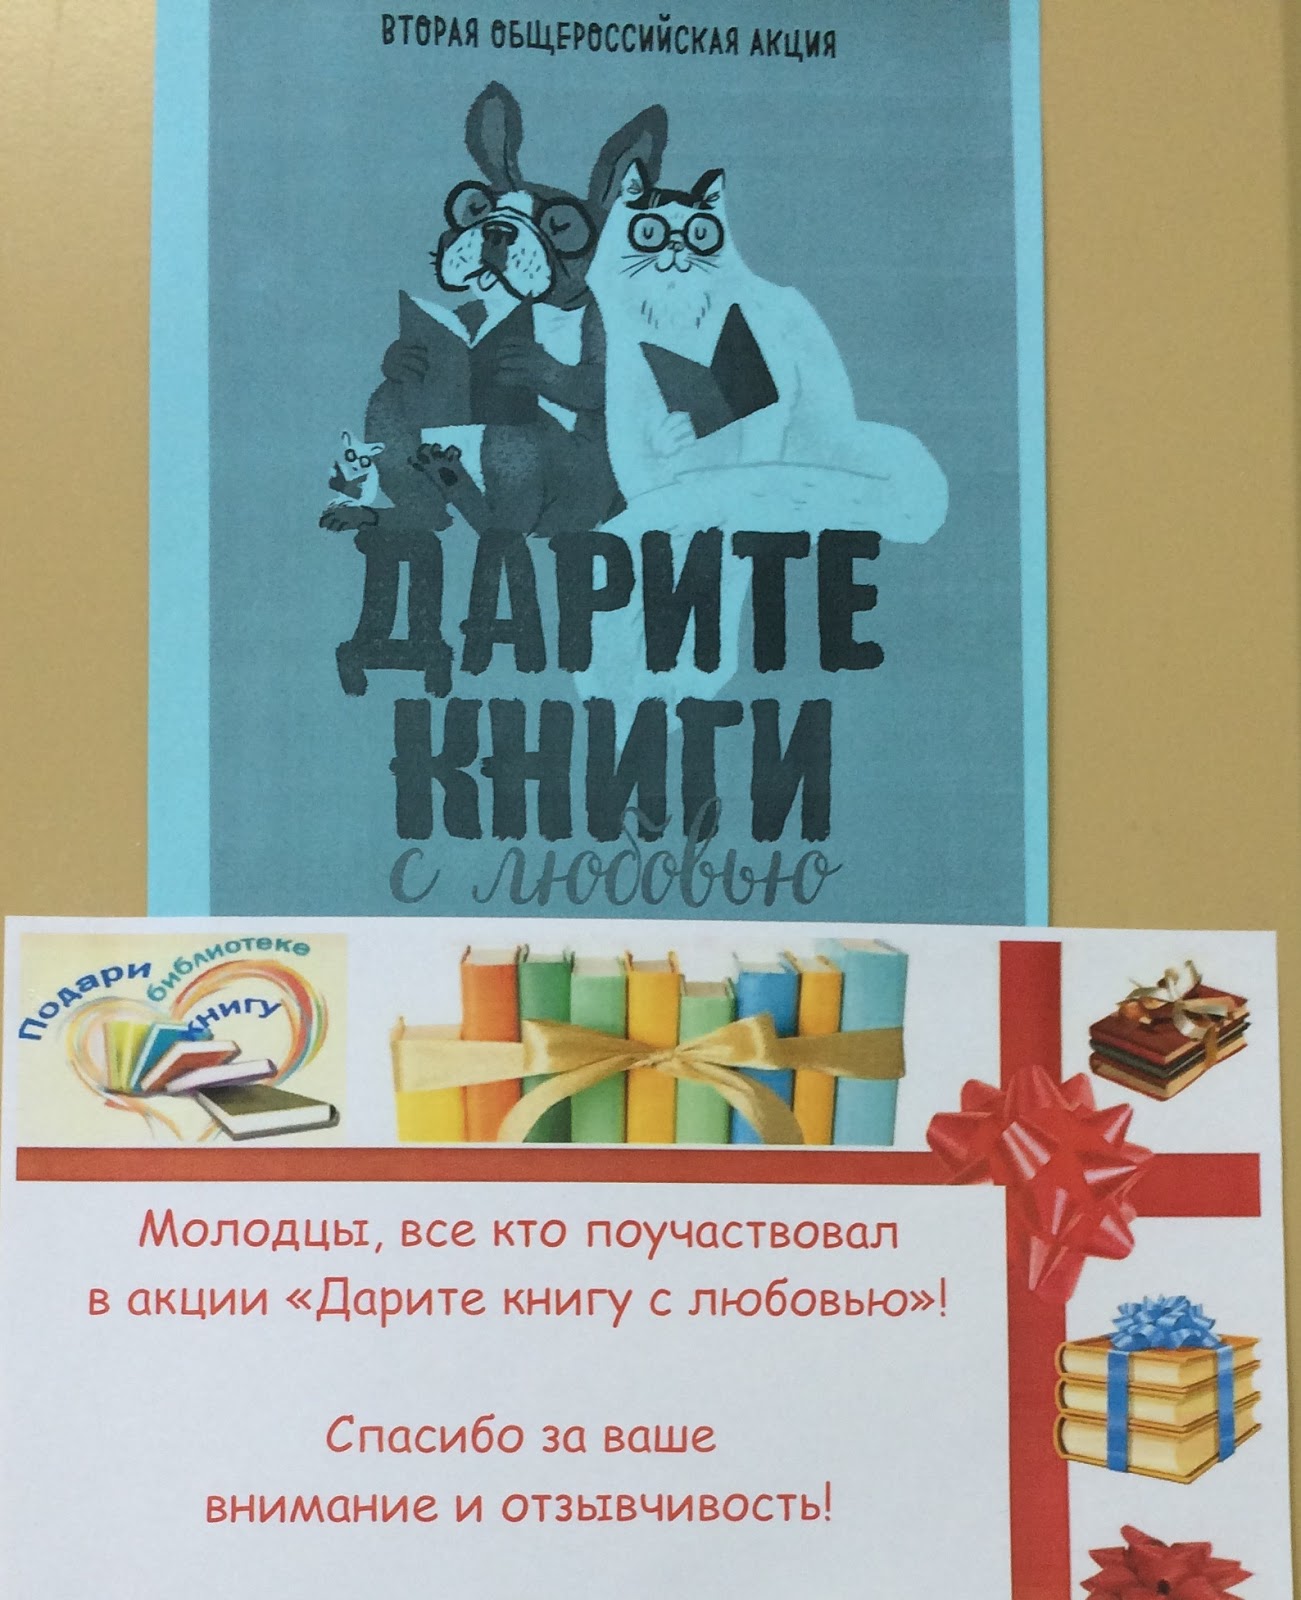 Общероссийская акция дарите книги